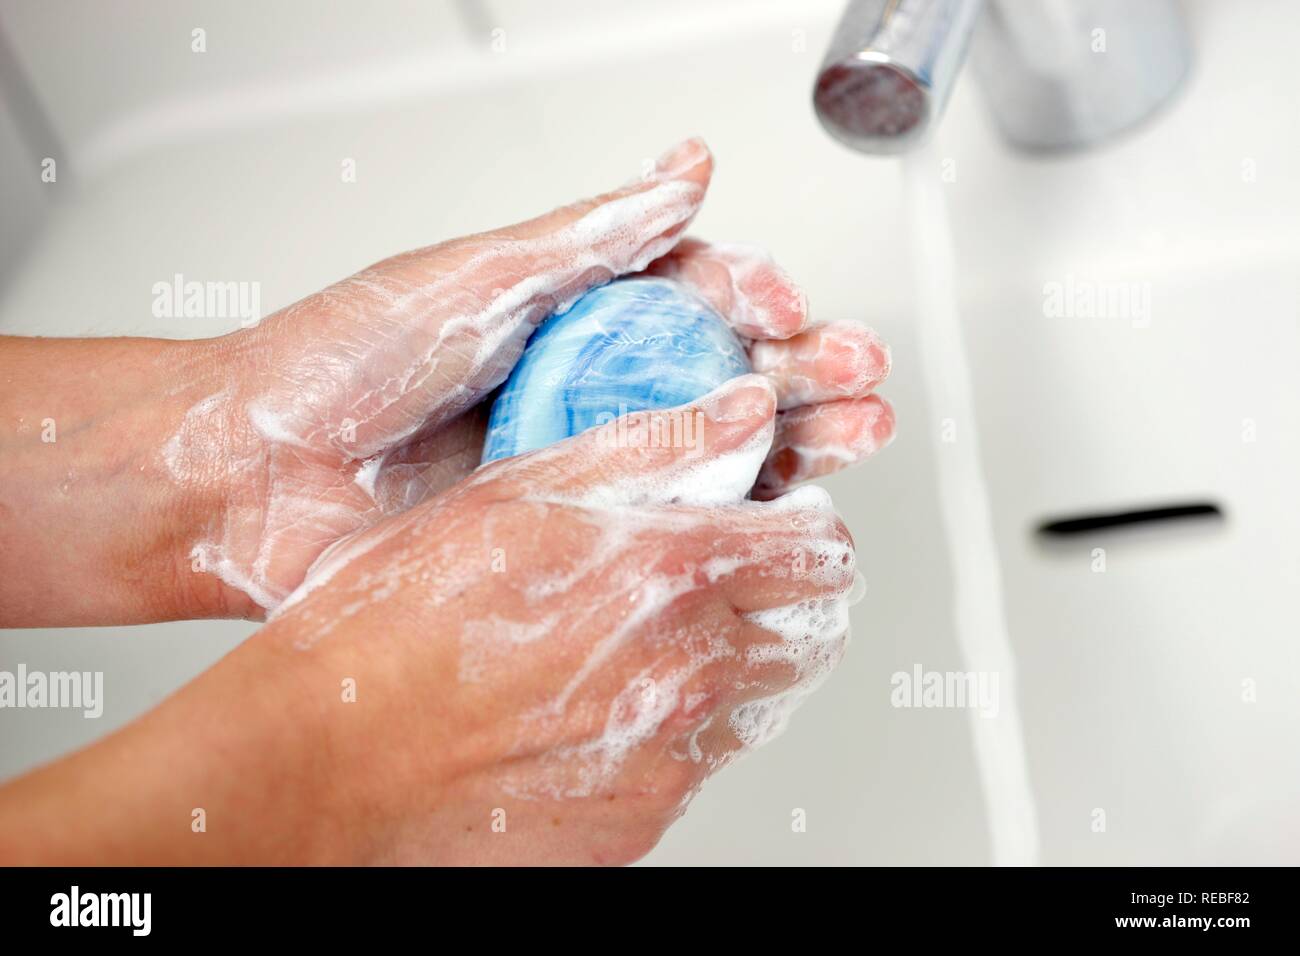 Die Hände werden in ein Waschbecken mit Wasser und Seife gewaschen Stockfoto